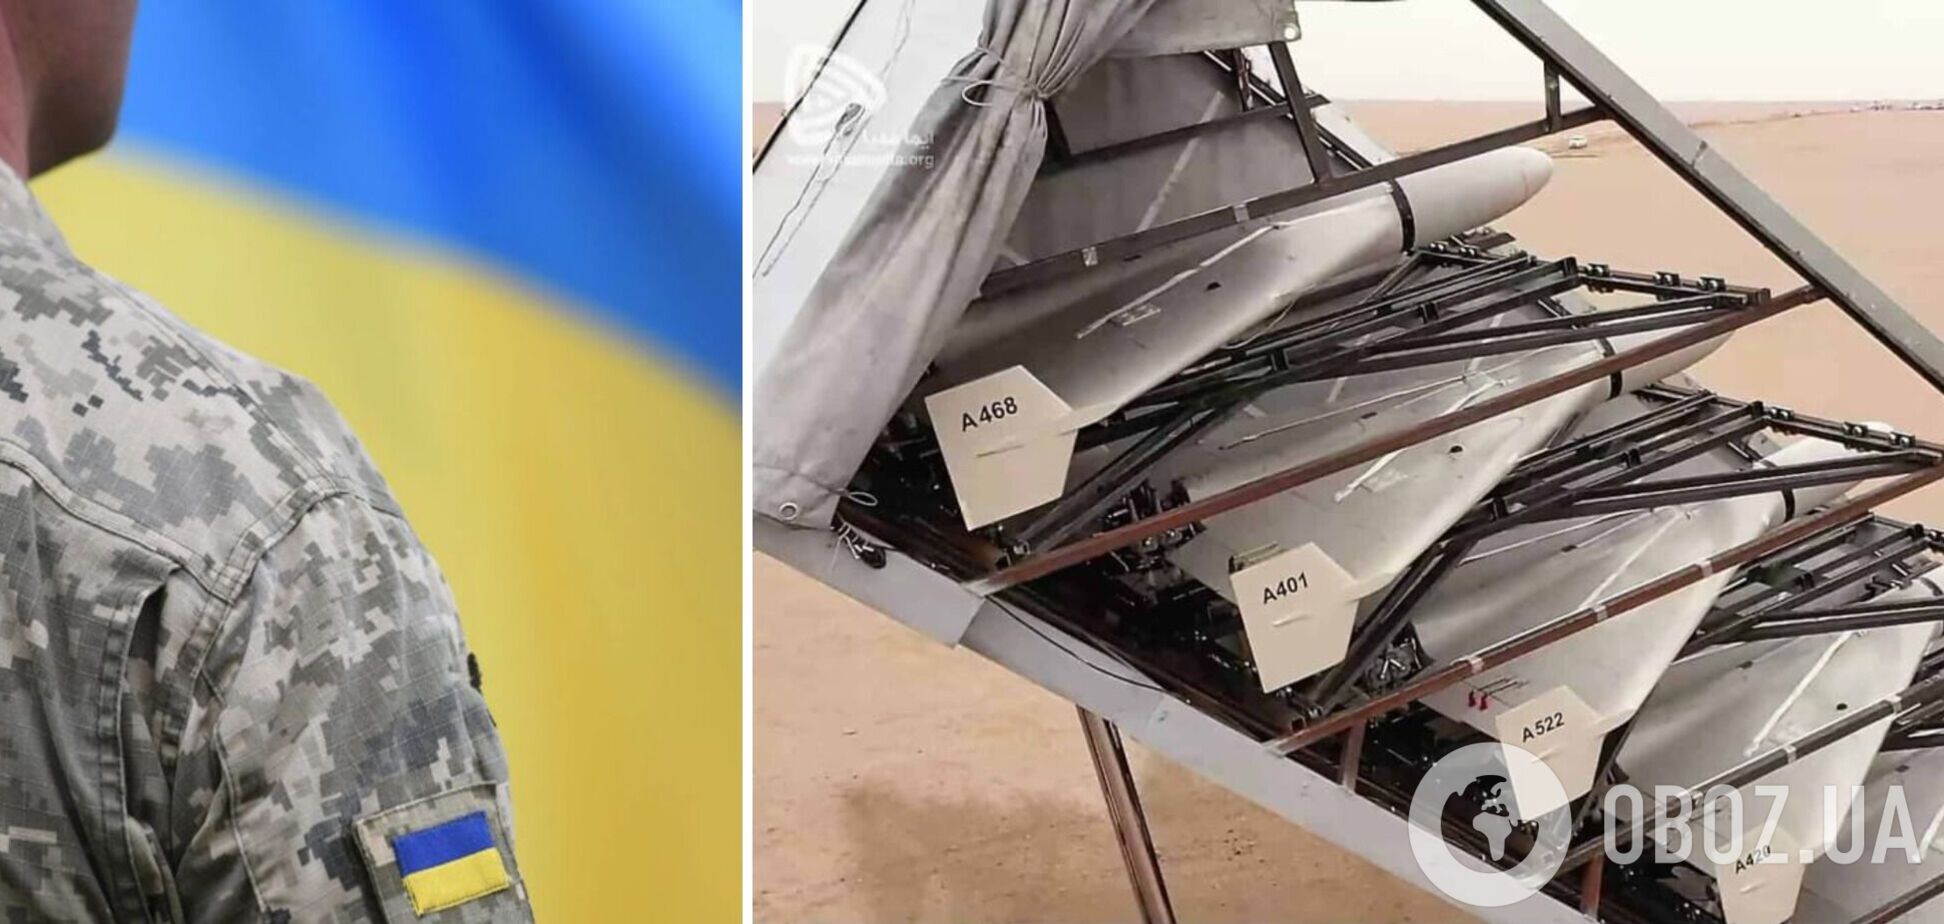 Защитники Украины за 36 суток сбили 223 вражеских дрона-камикадзе Shahed-136